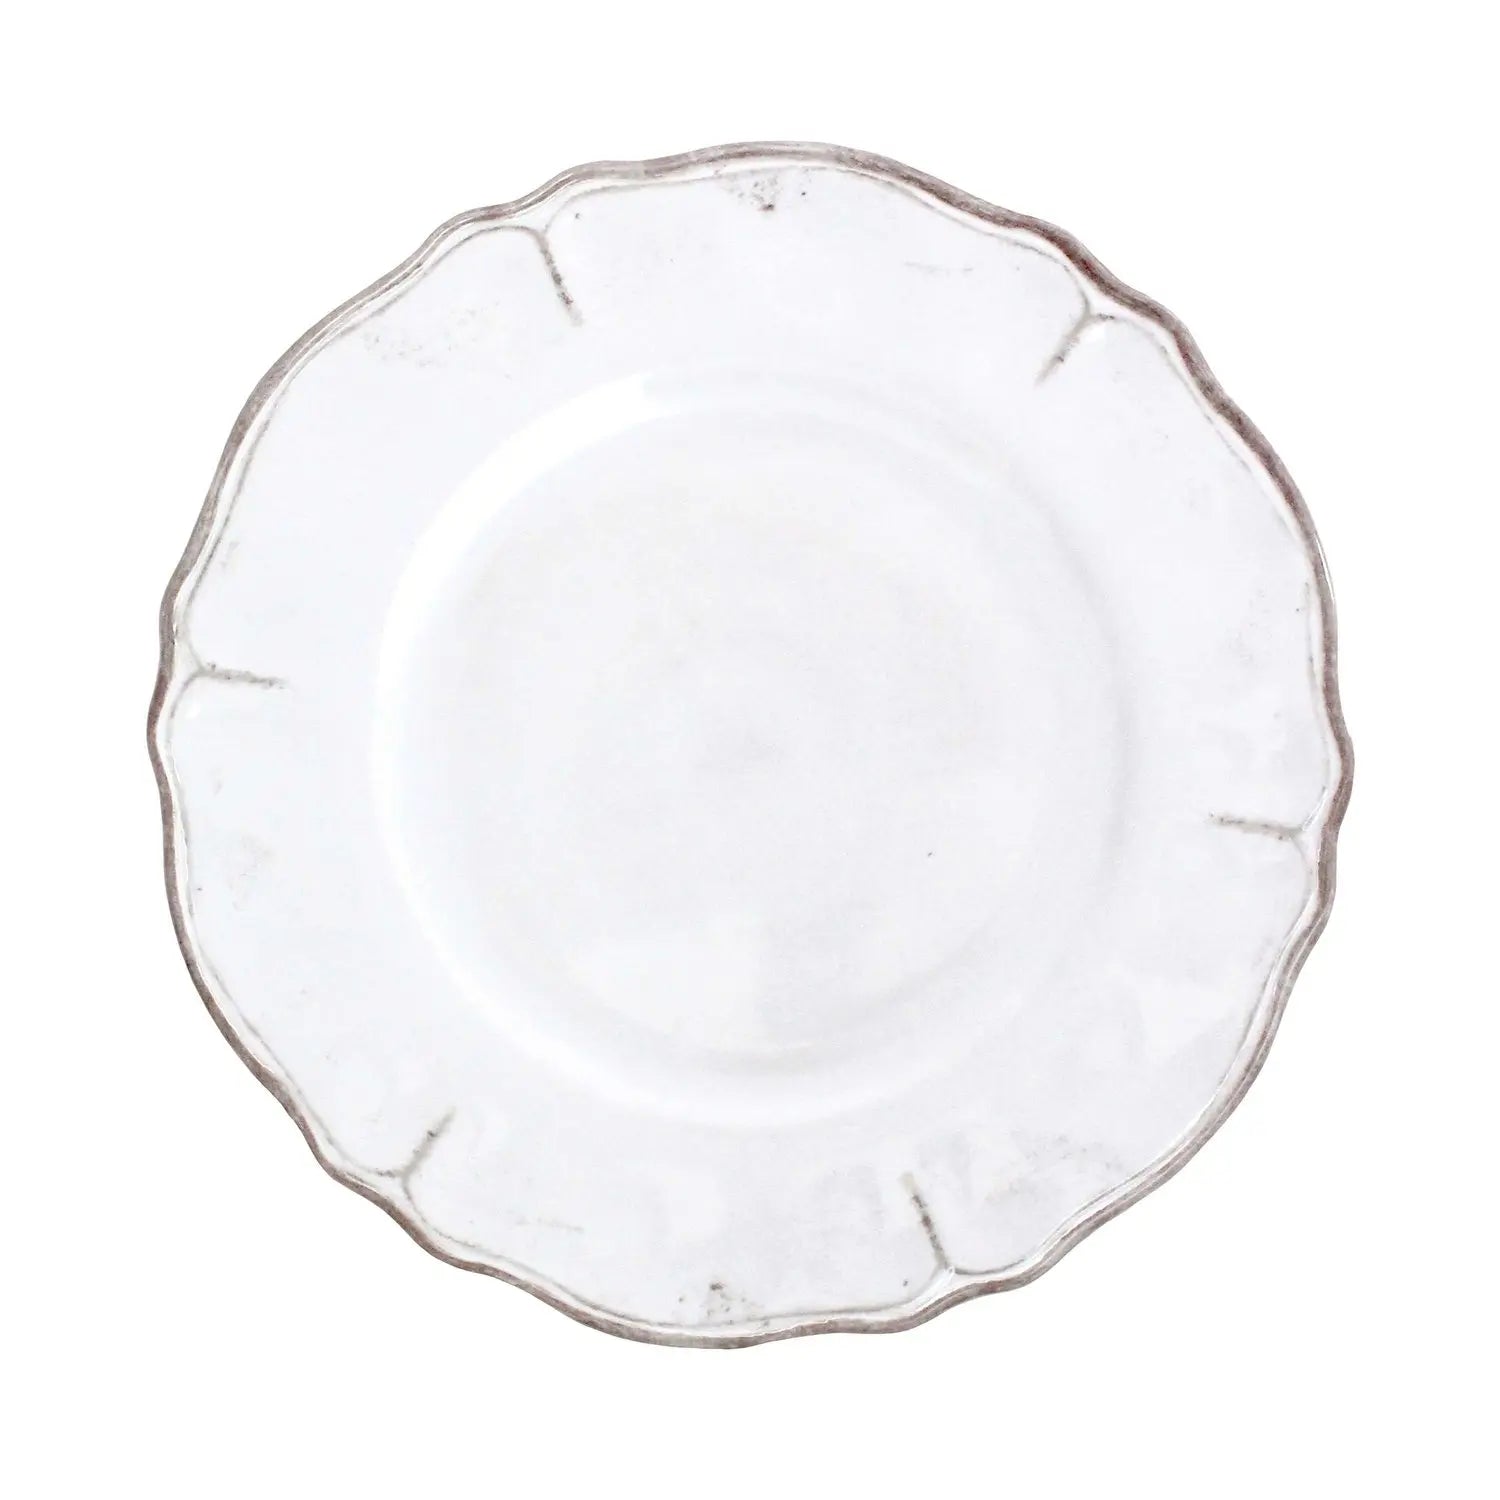 Le Cadeaux Rustica Antique White 11 inch Dinner Plate